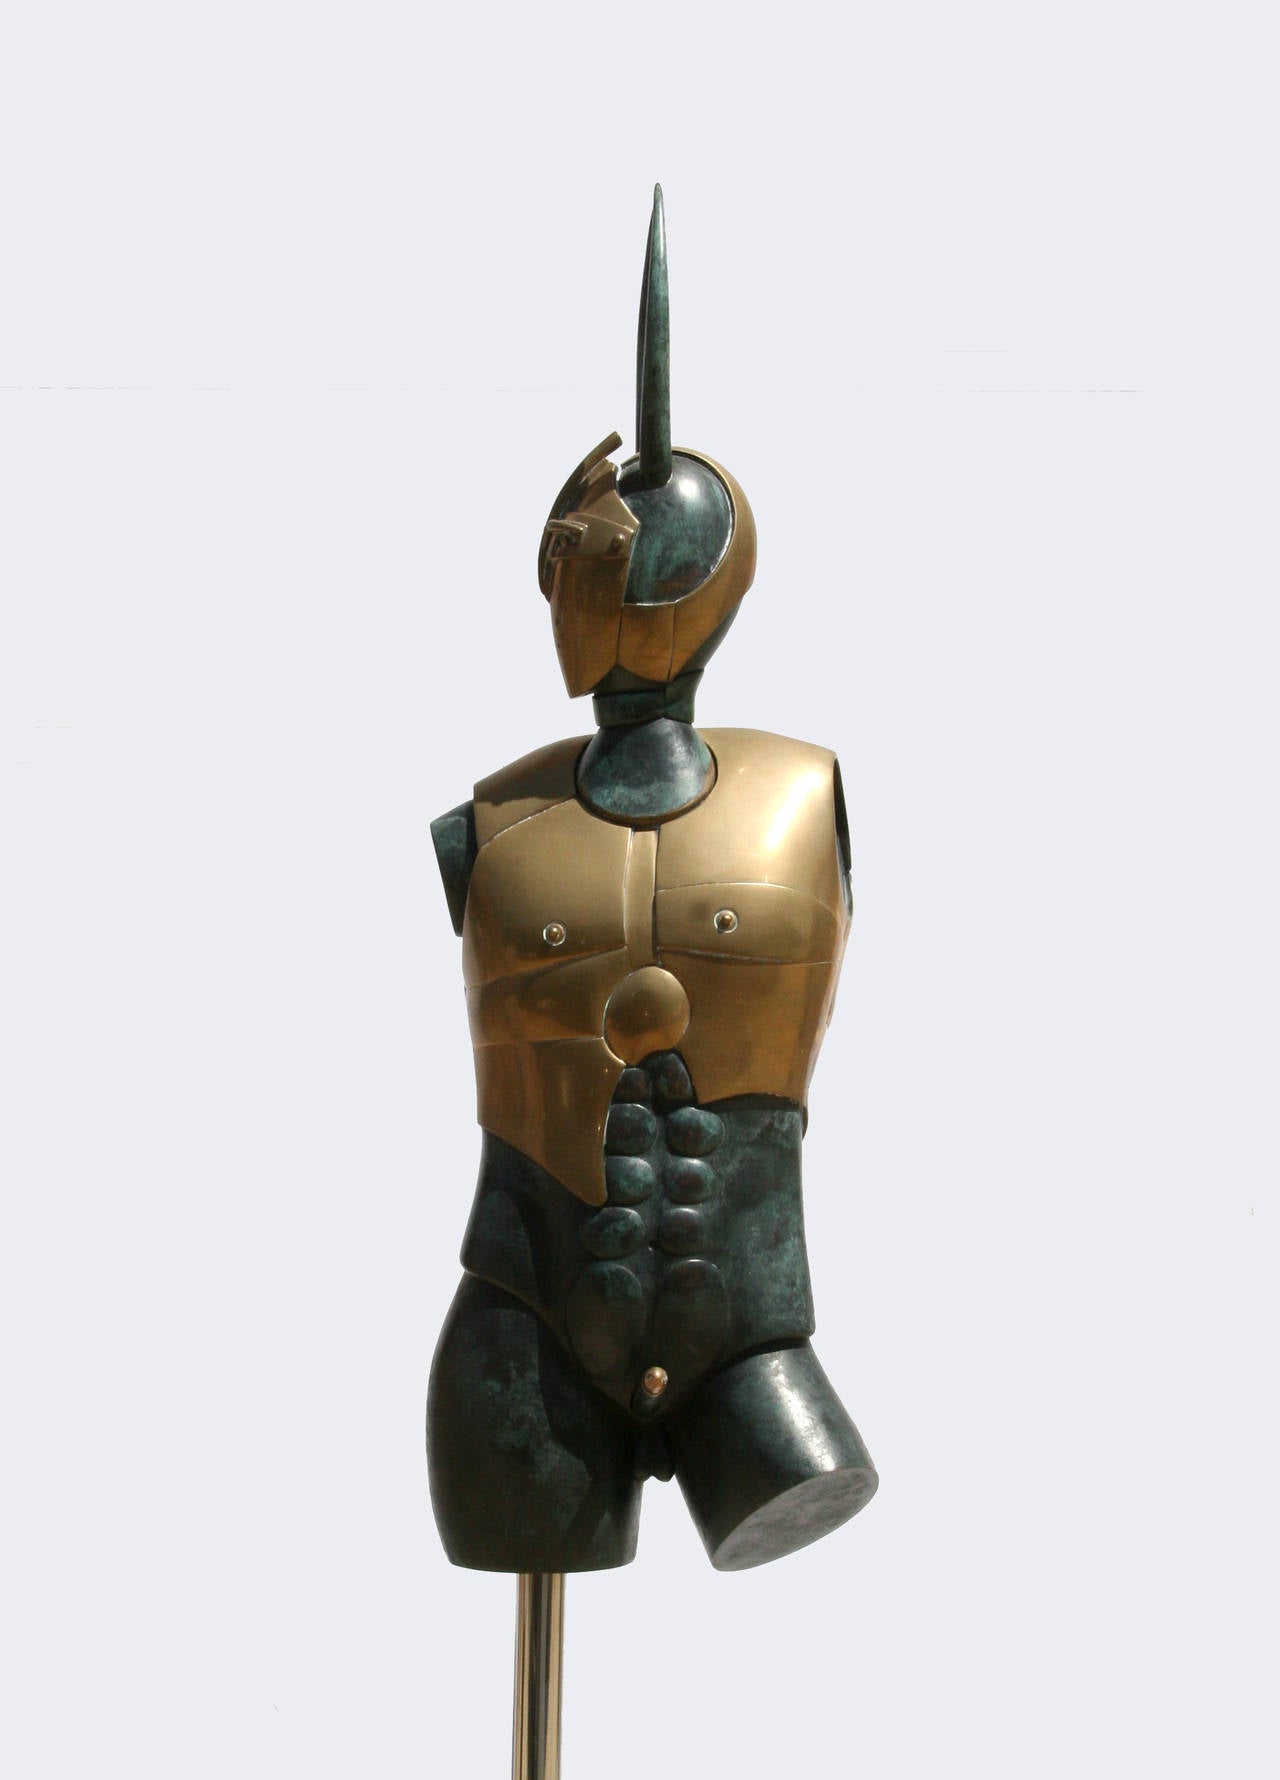 Paul Wunderlich Figurative Sculpture - Minotaurus, Bronze Sculpture by Wunderlich